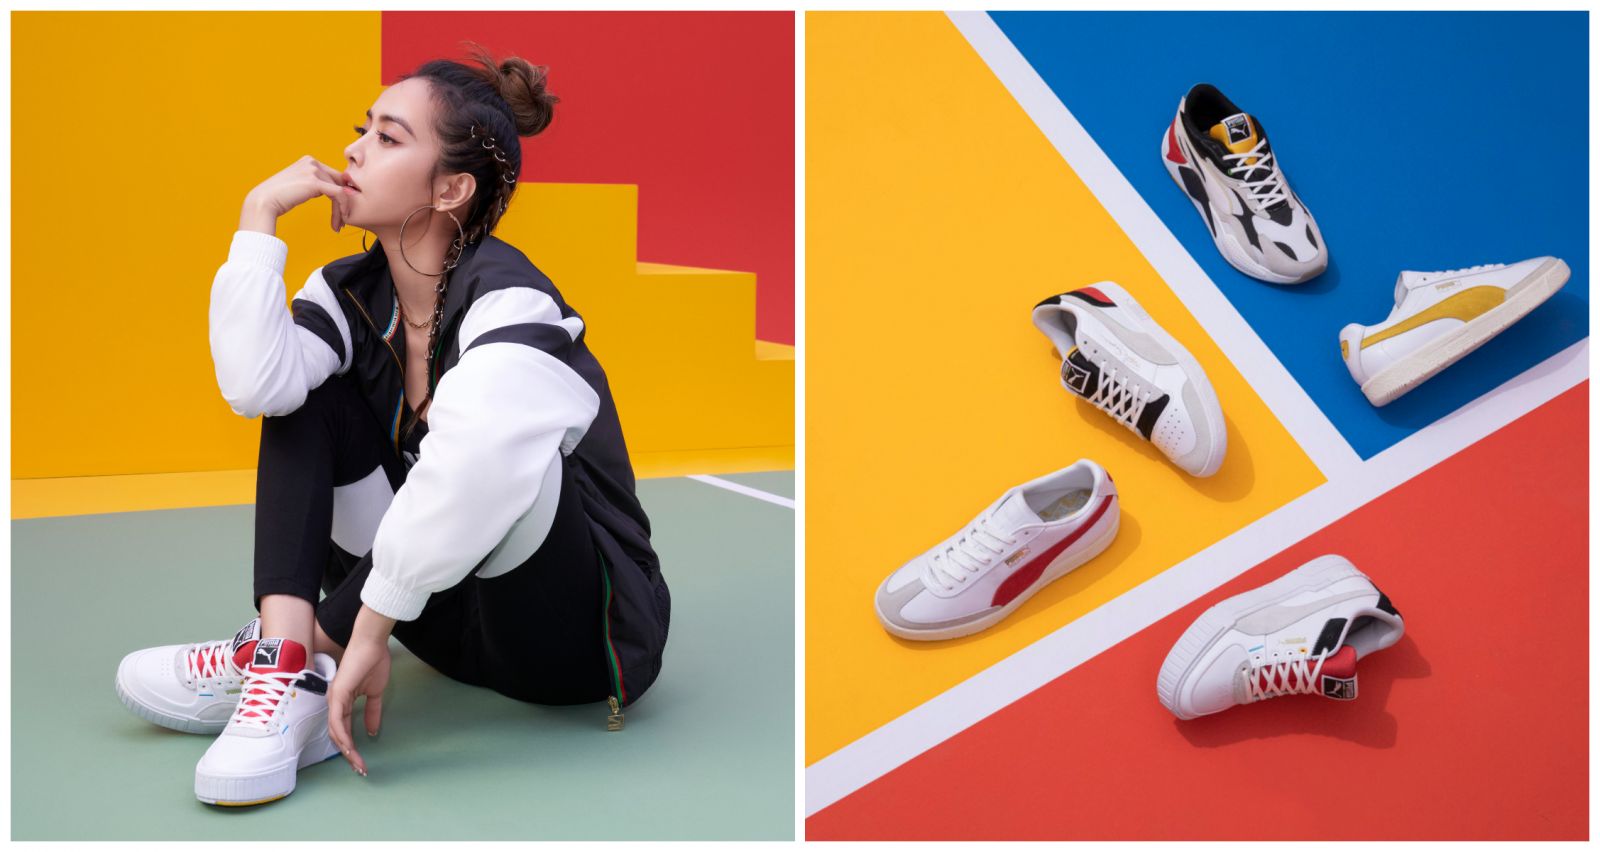 Jolin Weekly on Twitter: "Jolin Tsai in Unity Collection. Shoe: PUMA Cali Sport Sneakers / Twitter